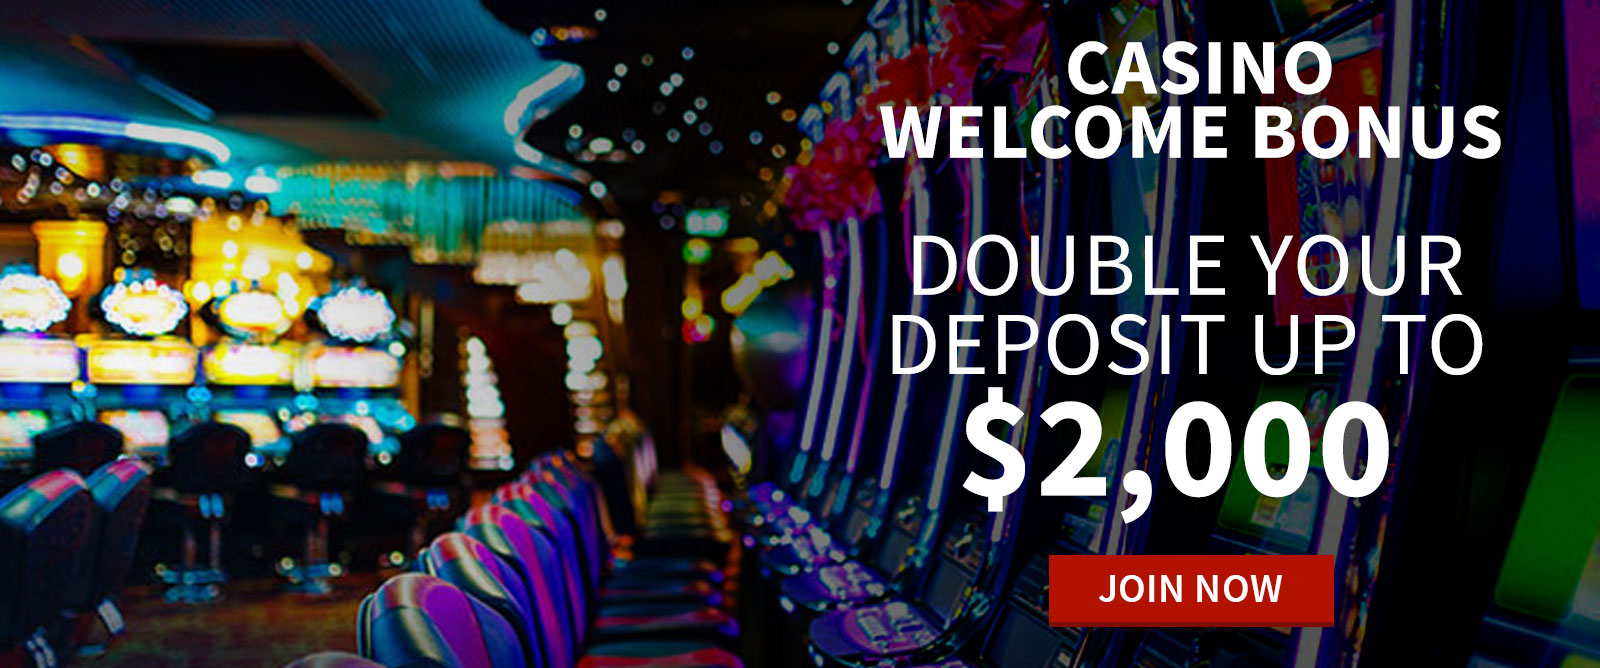 bonus cash casino games ignition